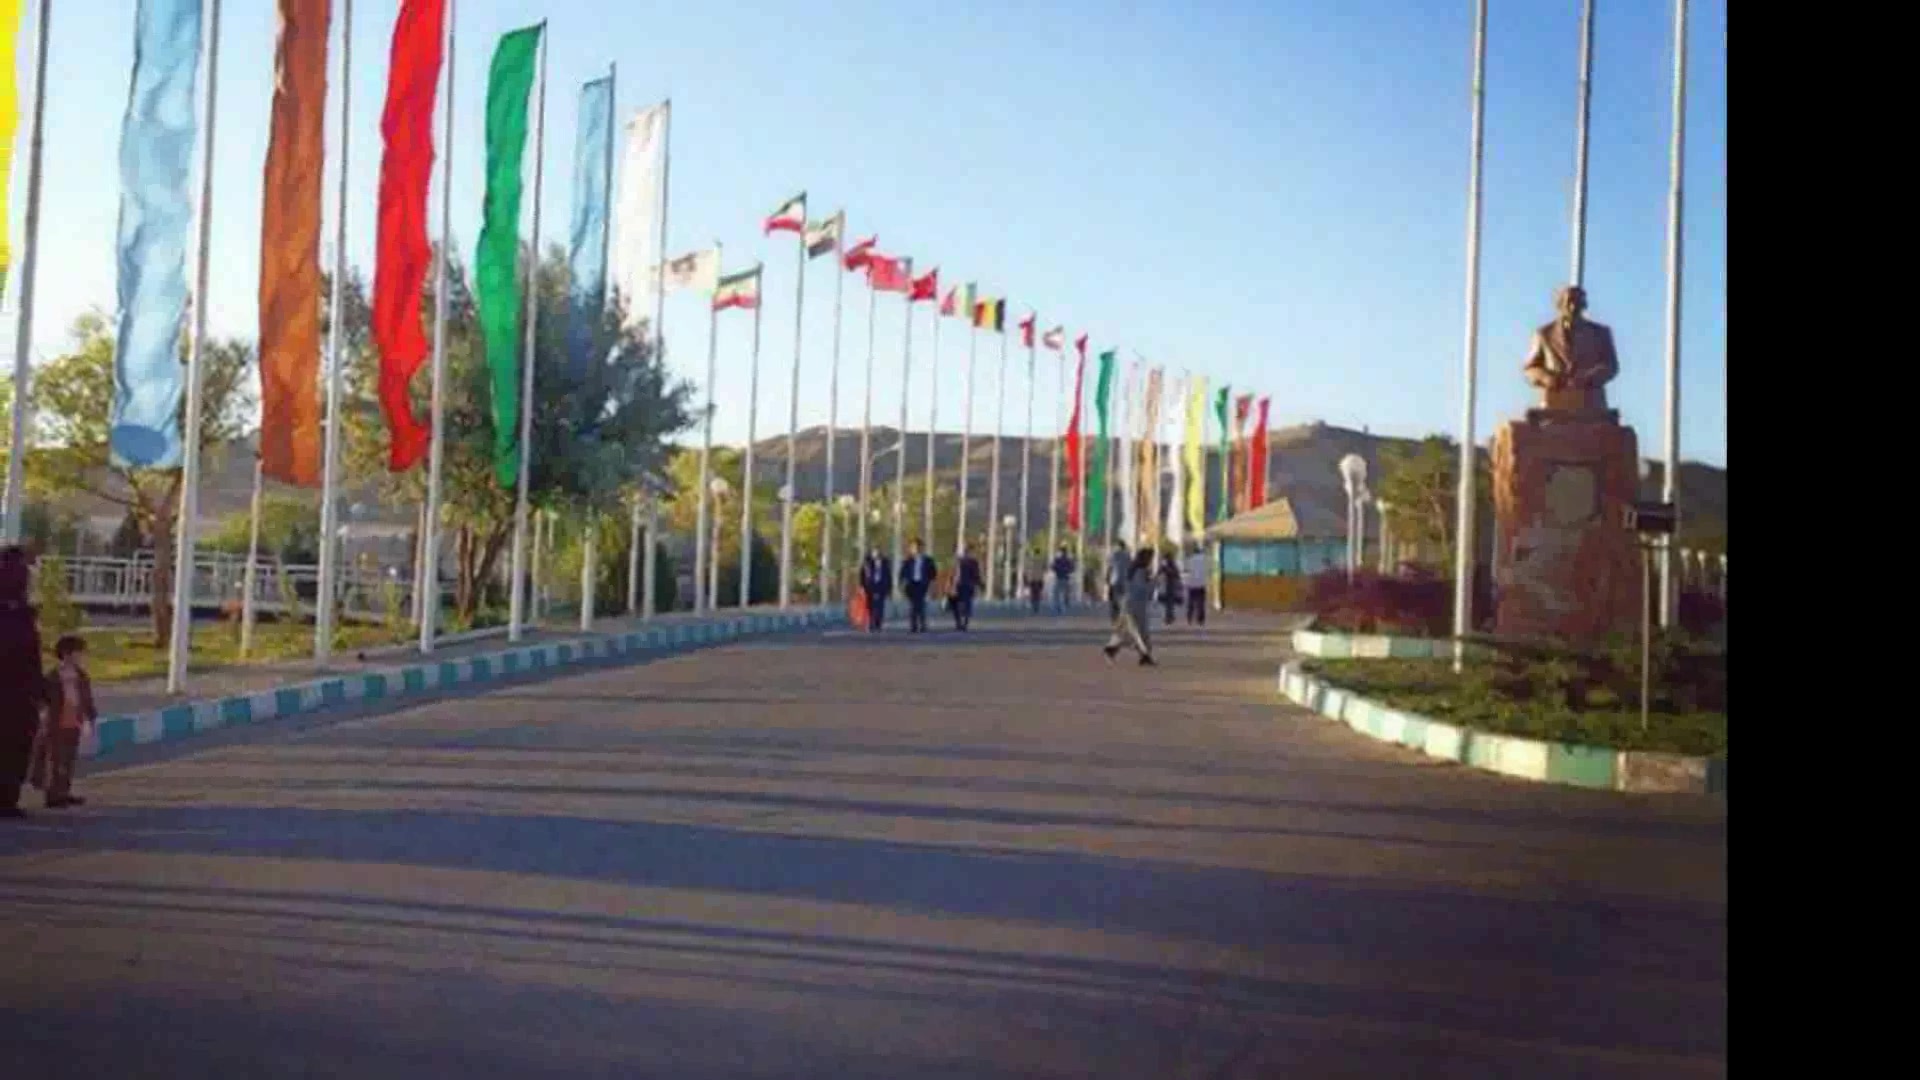 آبان پرچم | abanflag ؛ پرچم اهتزاز ، پرچم رومیزی و تشریفات ، ابر پرچم